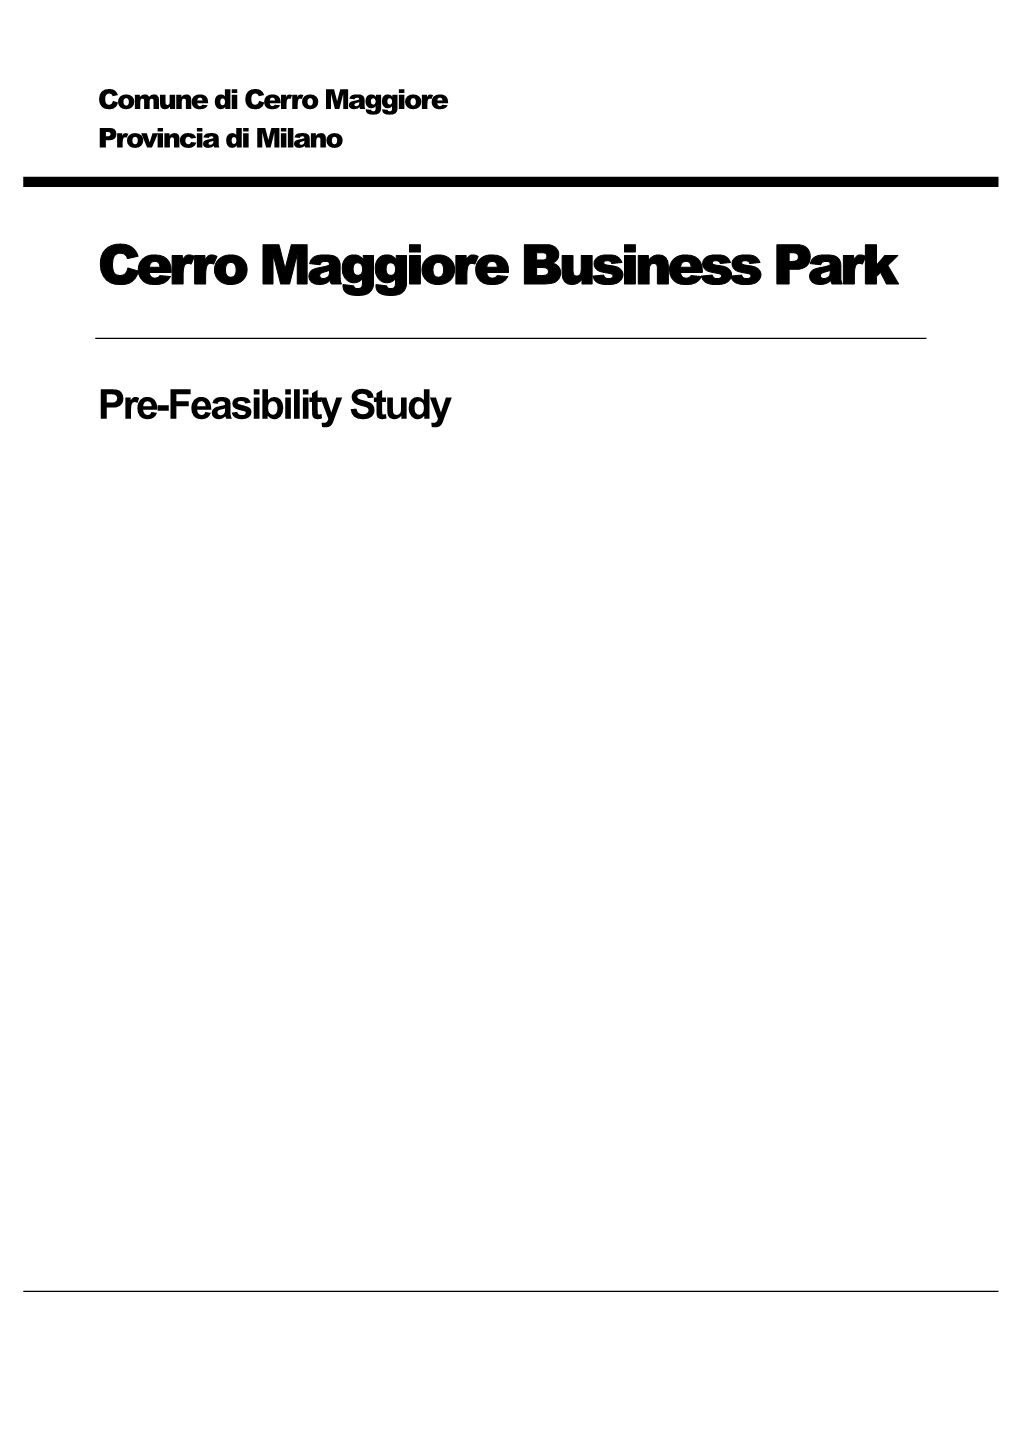 Cerro Maggiore Business Park